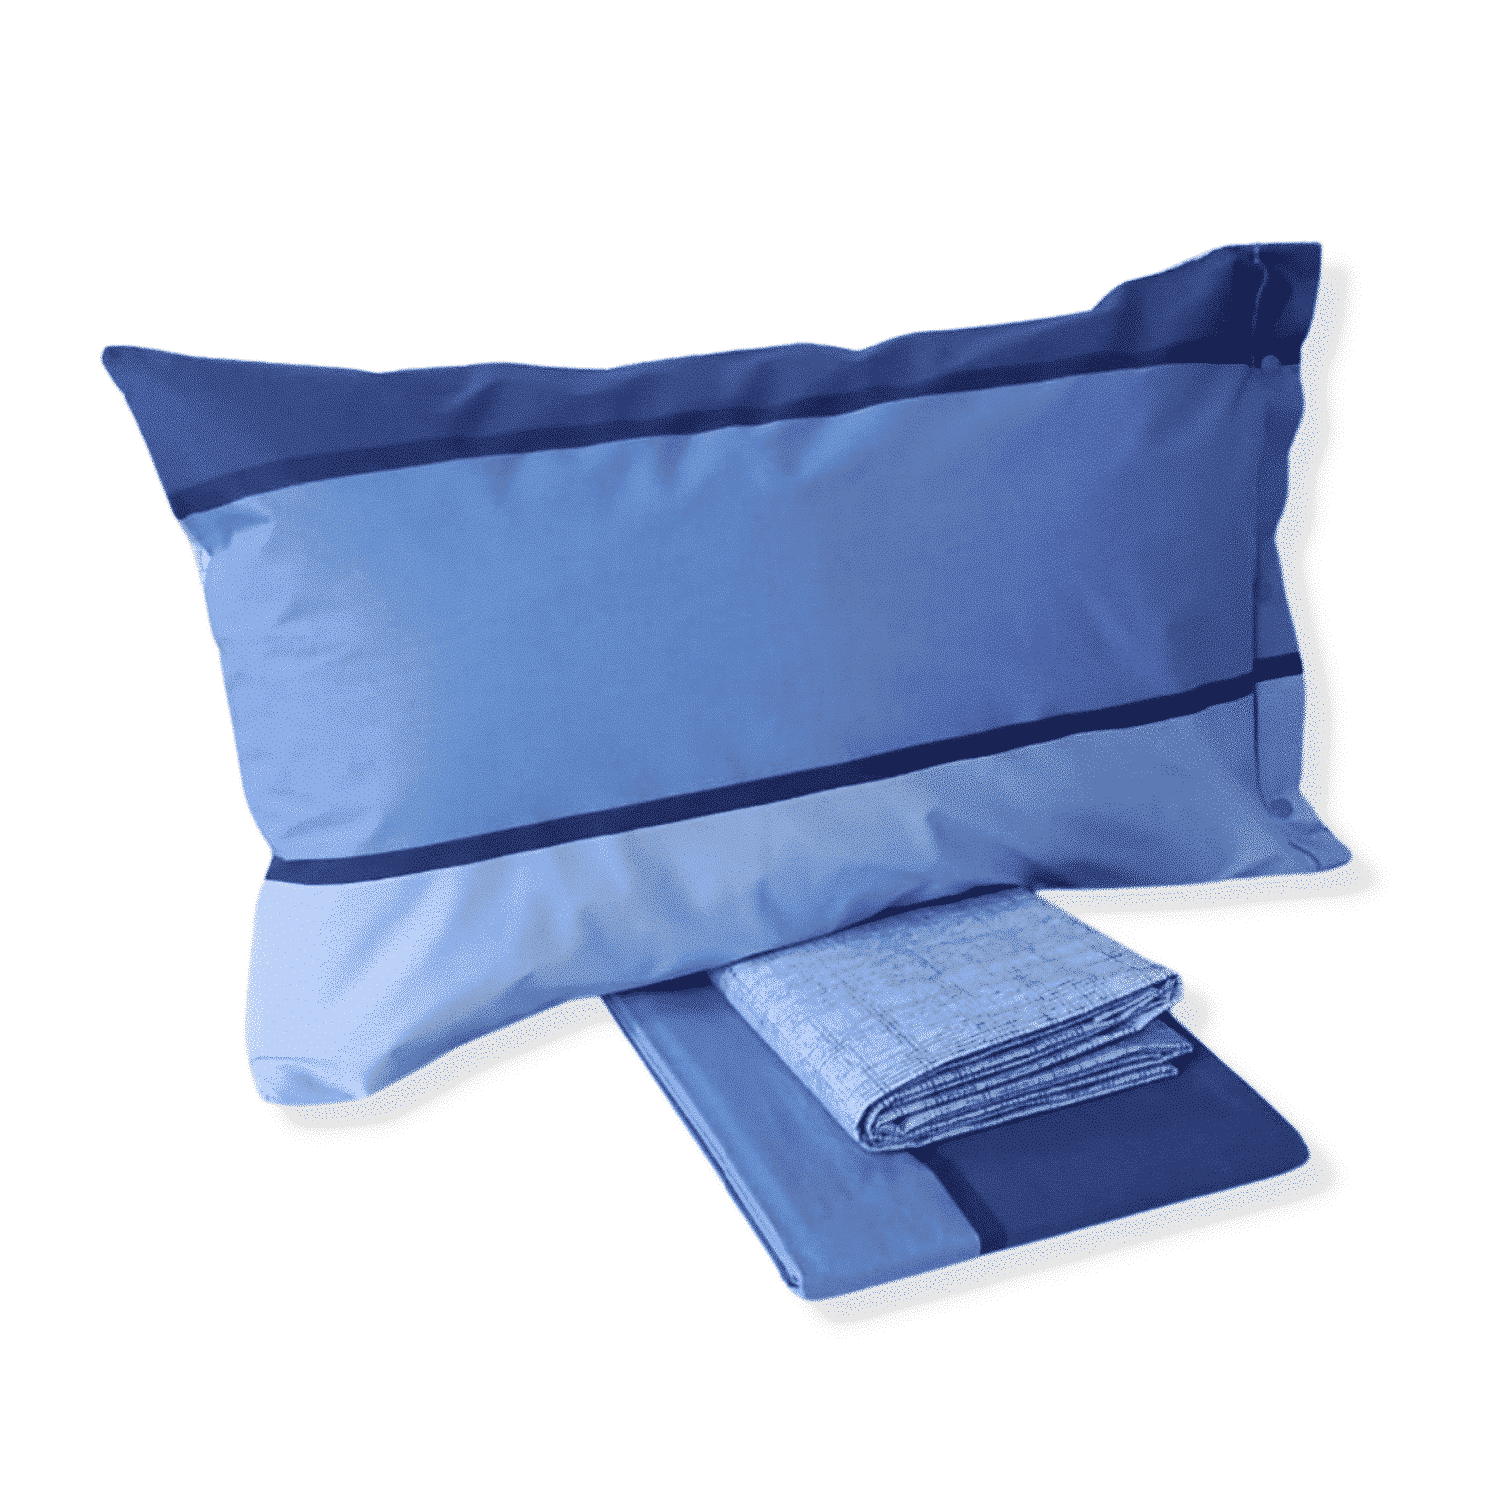 fascia-blu-completo-lenzuola-puro-cotone-made-in-italy-quadrifoglio-blu-azzurro-celeste-sfumato-fascioni-geometrico-moderno